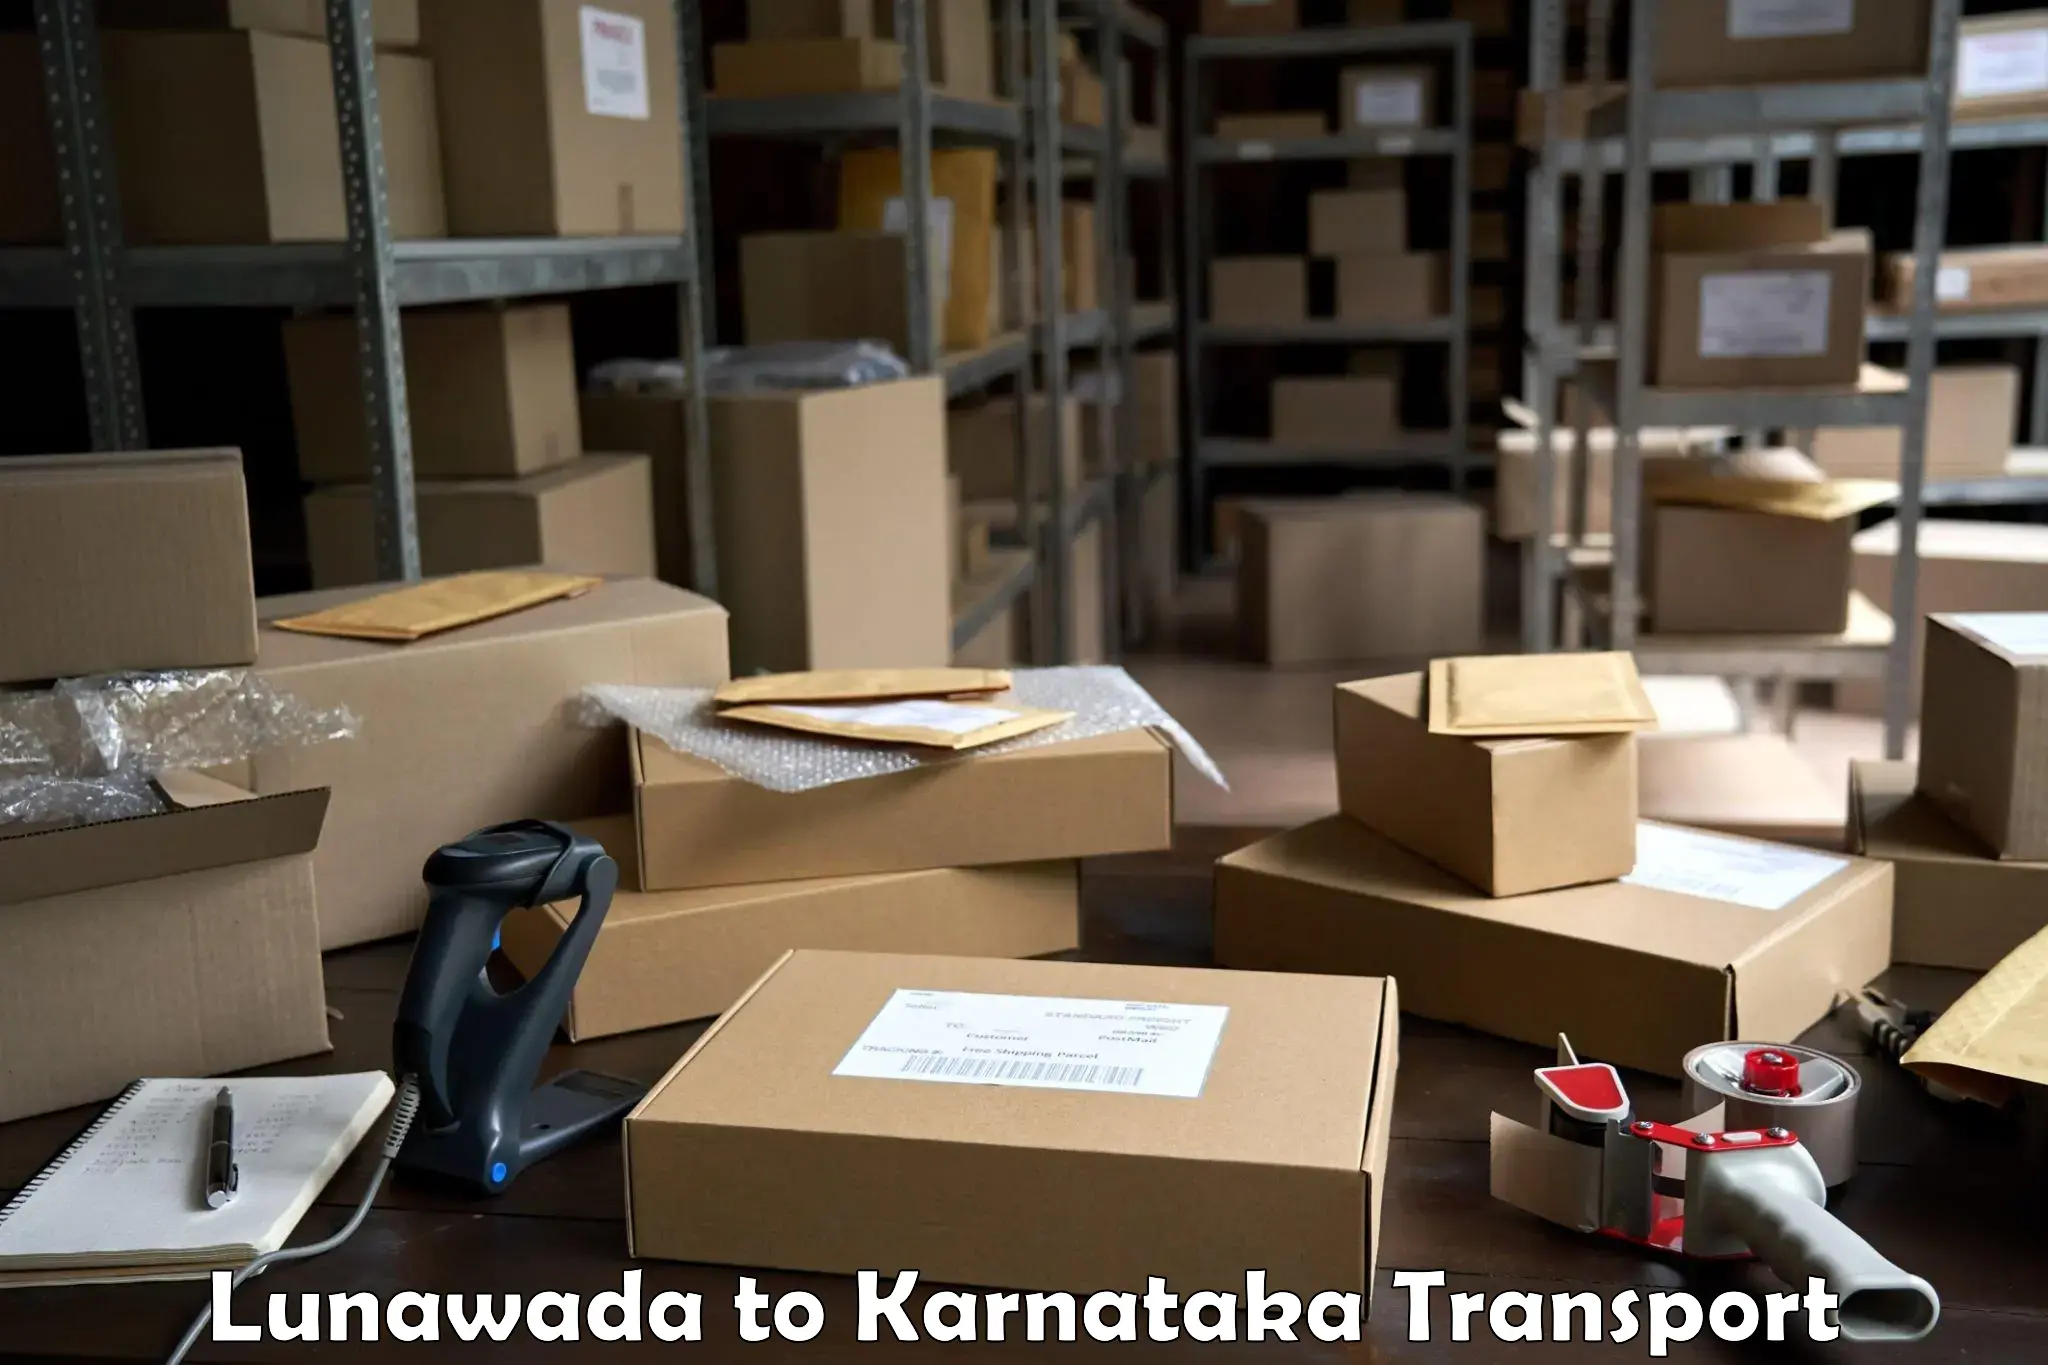 Furniture transport service Lunawada to Srirangapatna